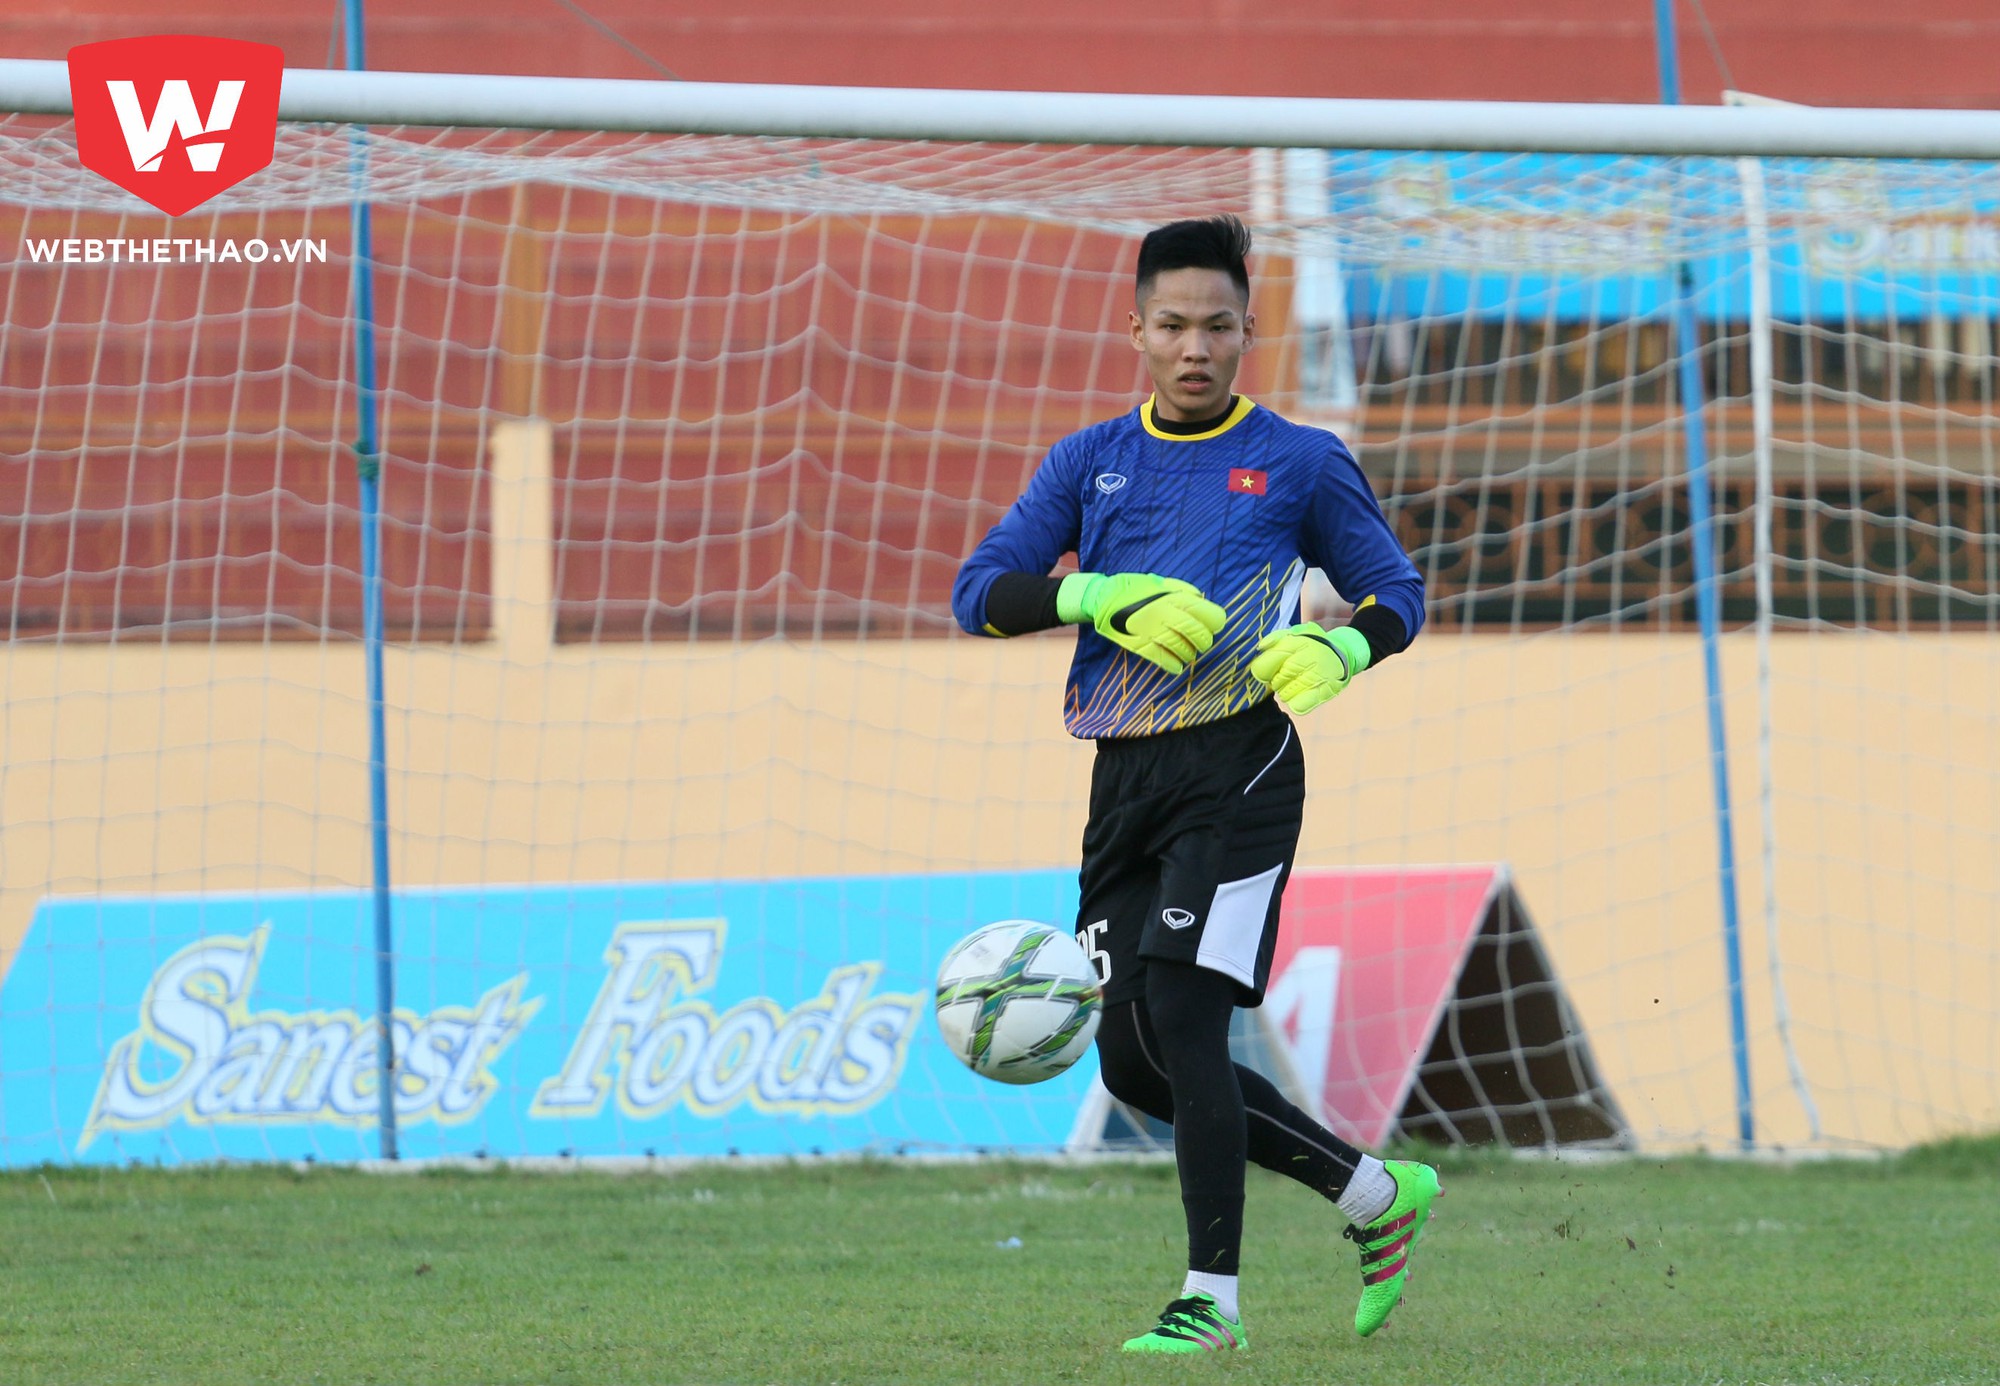 Sỹ Huy là thủ môn nhỏ tuổi nhất của U20 Việt Nam lúc này.